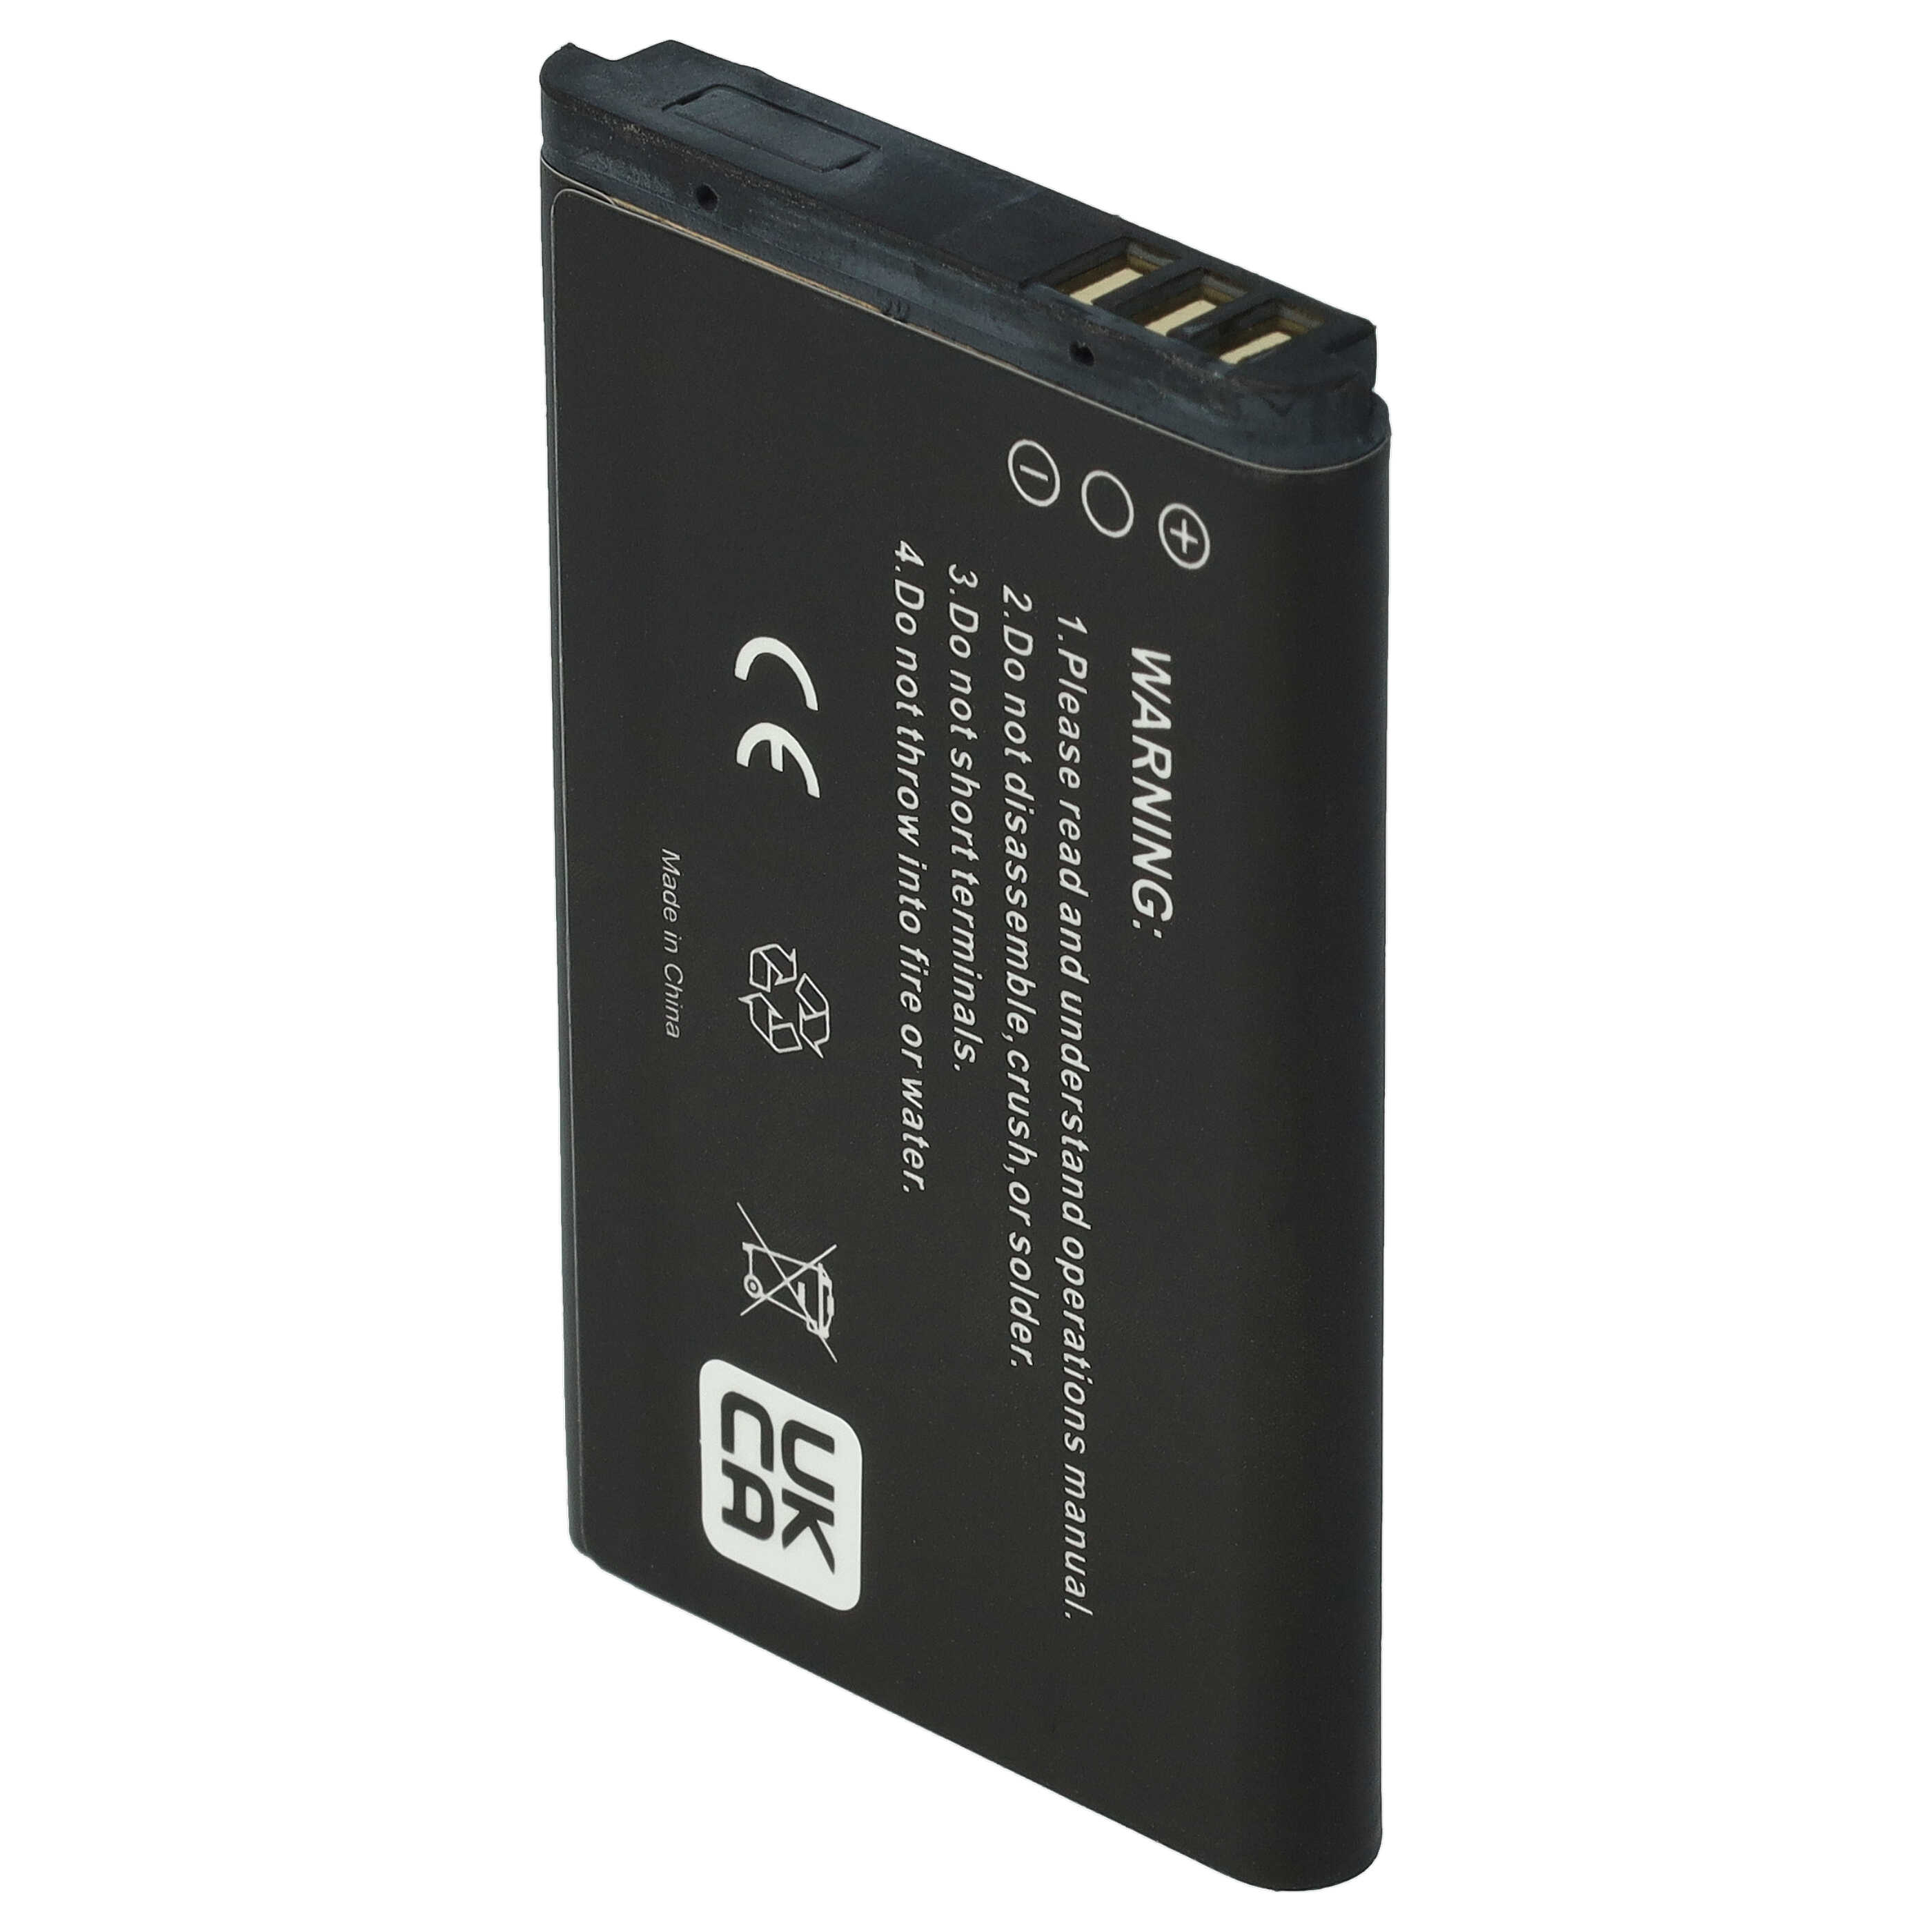 Batterie remplace Swissvoice 20405928 pour téléphone portable - 700mAh, 3,7V, Li-ion